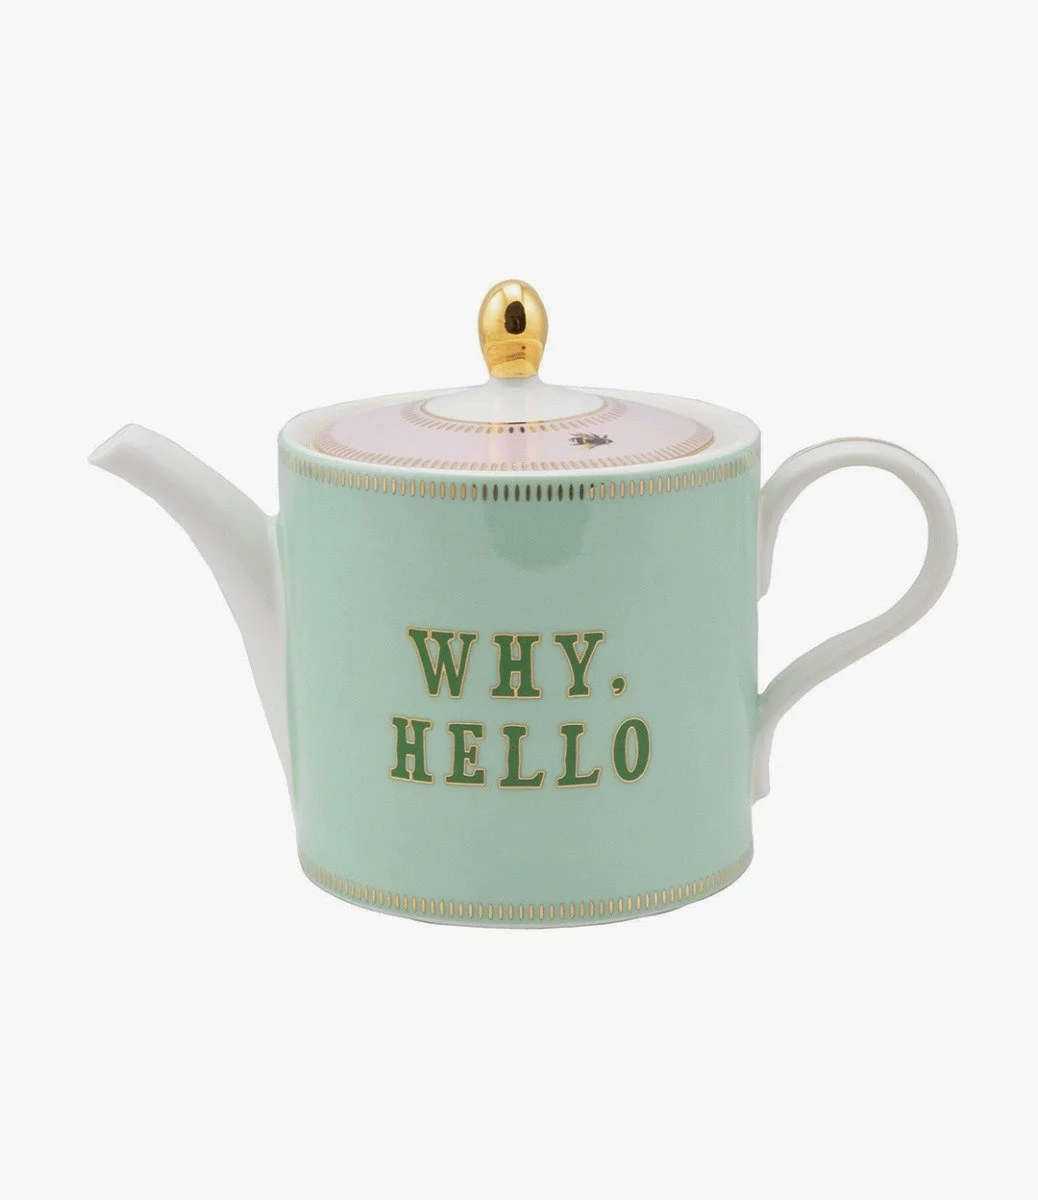 Why Hello! Teapot by Yvonne Ellen